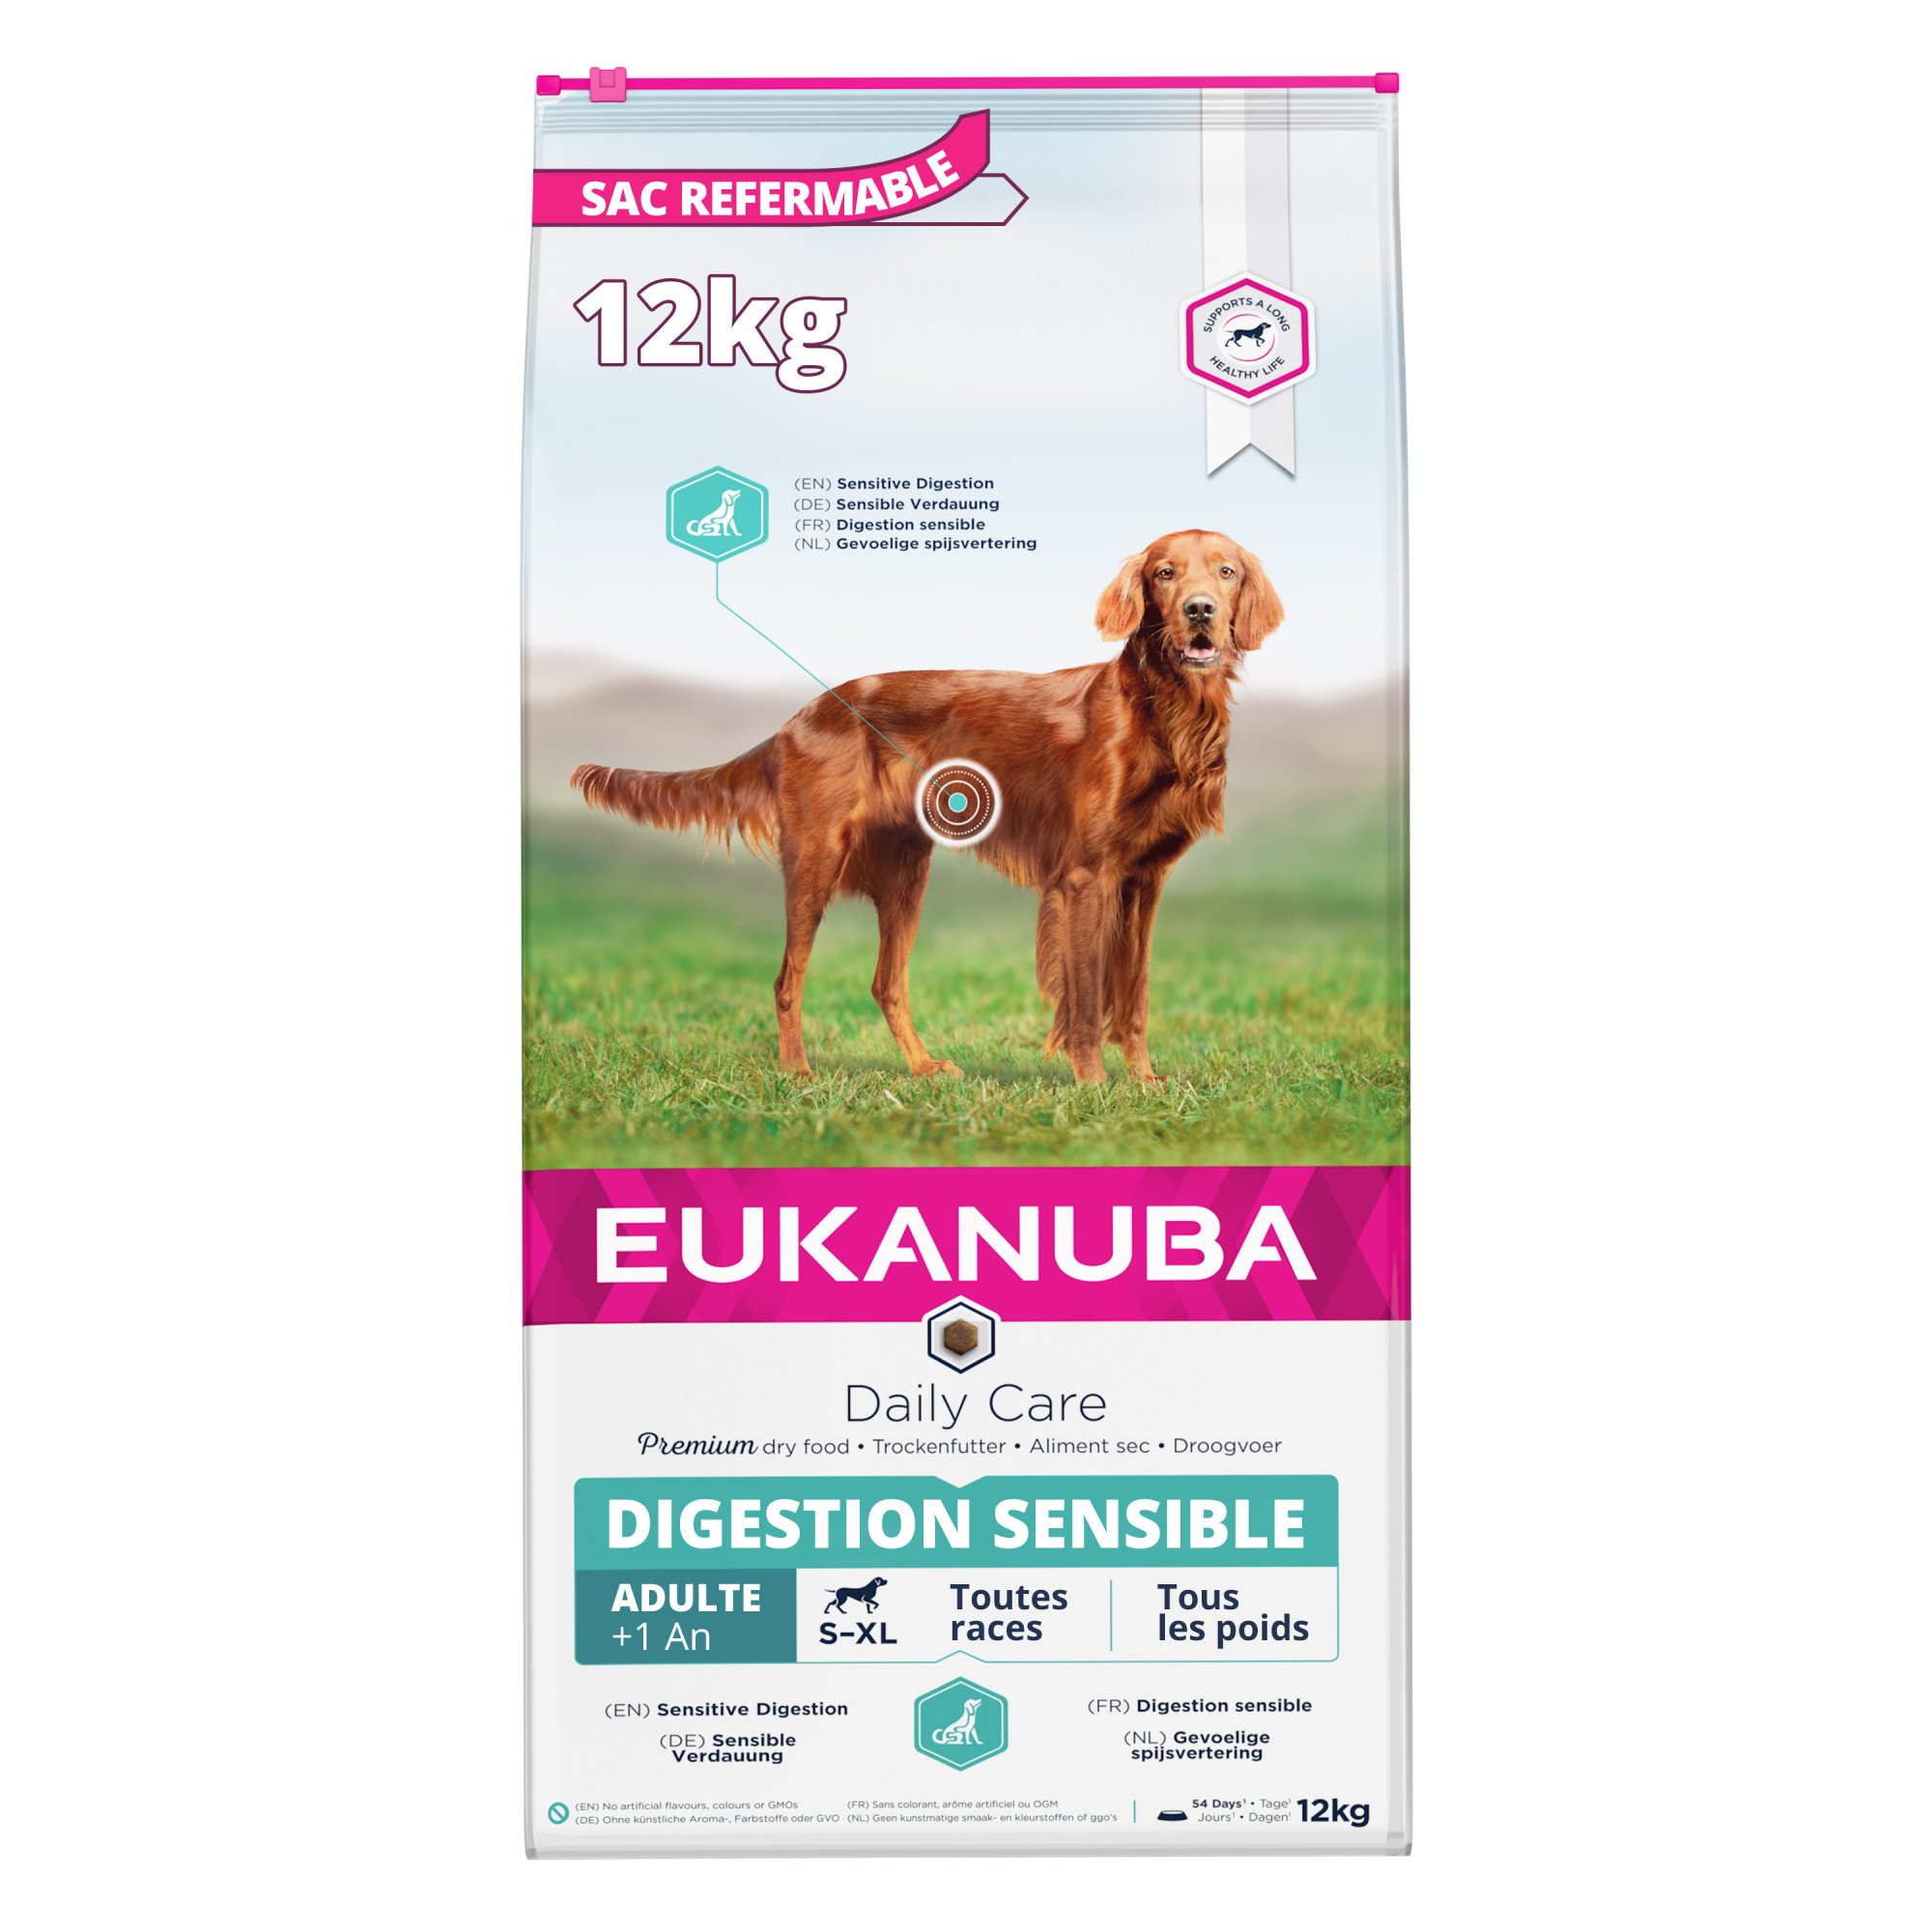 Eukanuba Daily Care Digestion Sensible para perros con digestión sensible